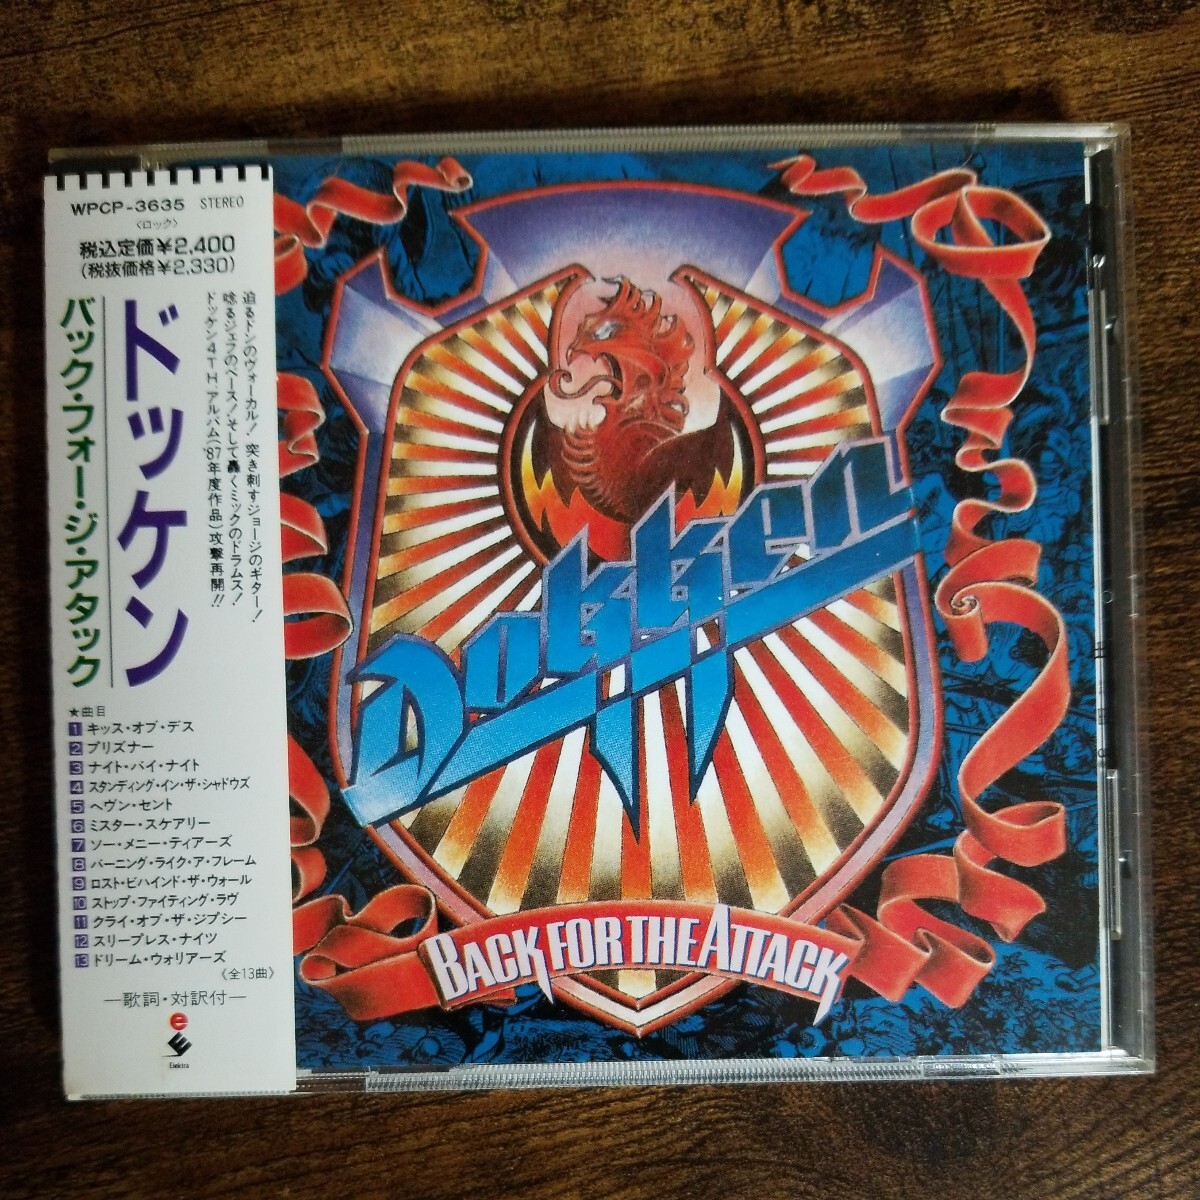 [ записано в Японии CD с поясом оби ] Dokken задний * four *ji* attack DOKKEN BACK FOR THE ATTACK 1990 год внутренний повторный departure контрольный номер J